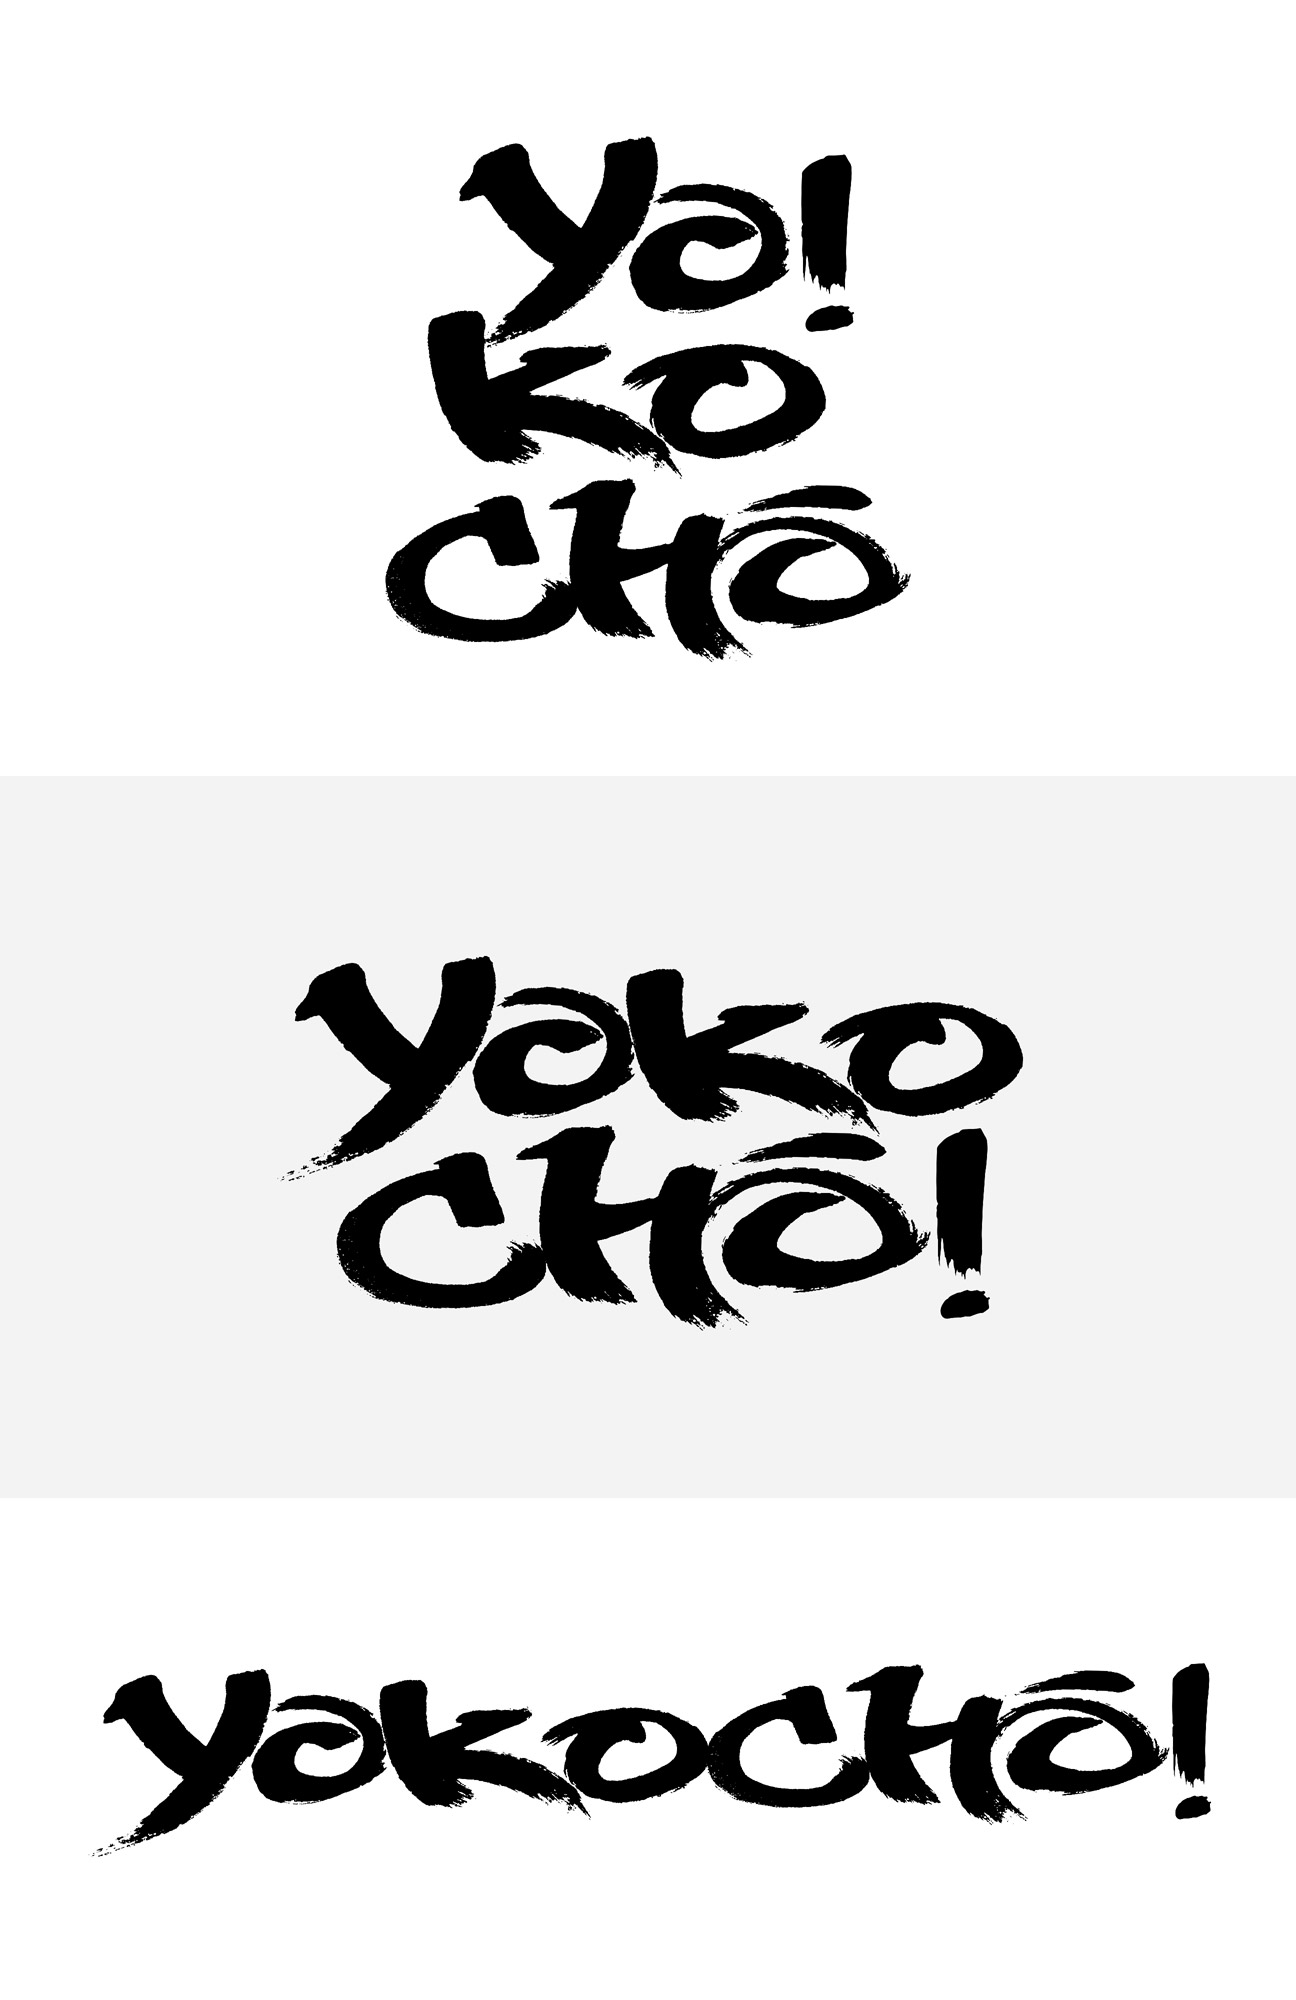 yokocho_logo_calligraphy_stack